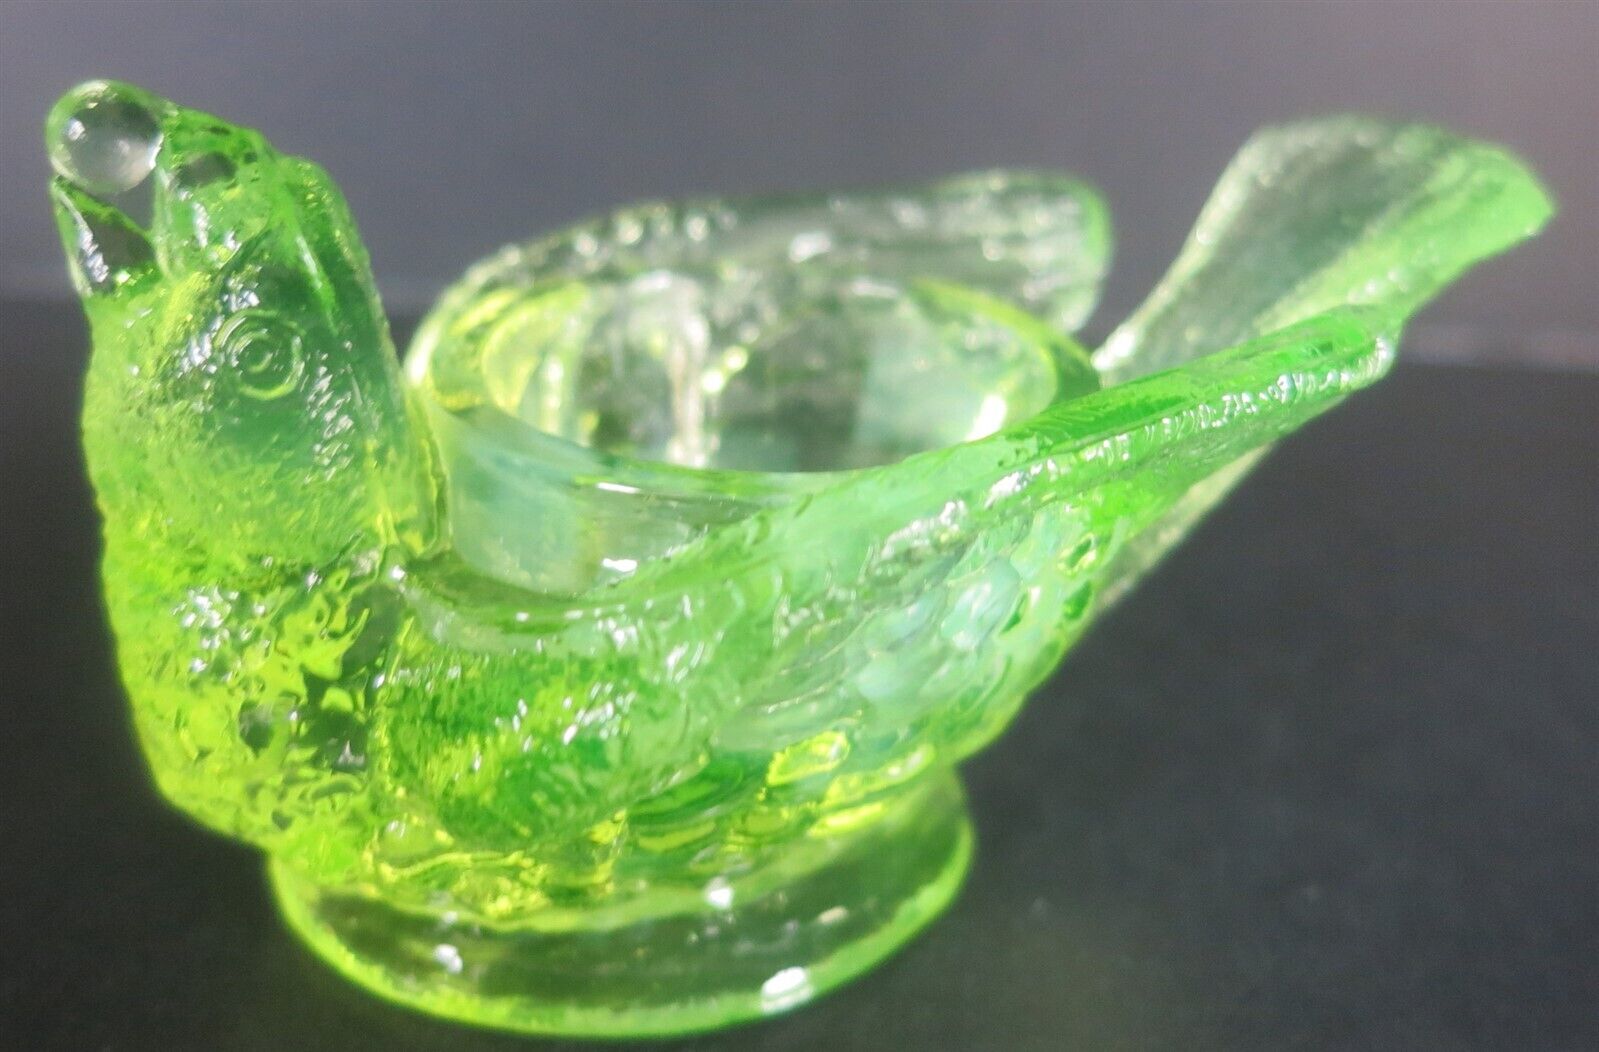 DEGENHART GLASS BIRD & BERRY OPEN SALT TRANSLUCENT YELLOW GREEN UV REACTIVE #DC1